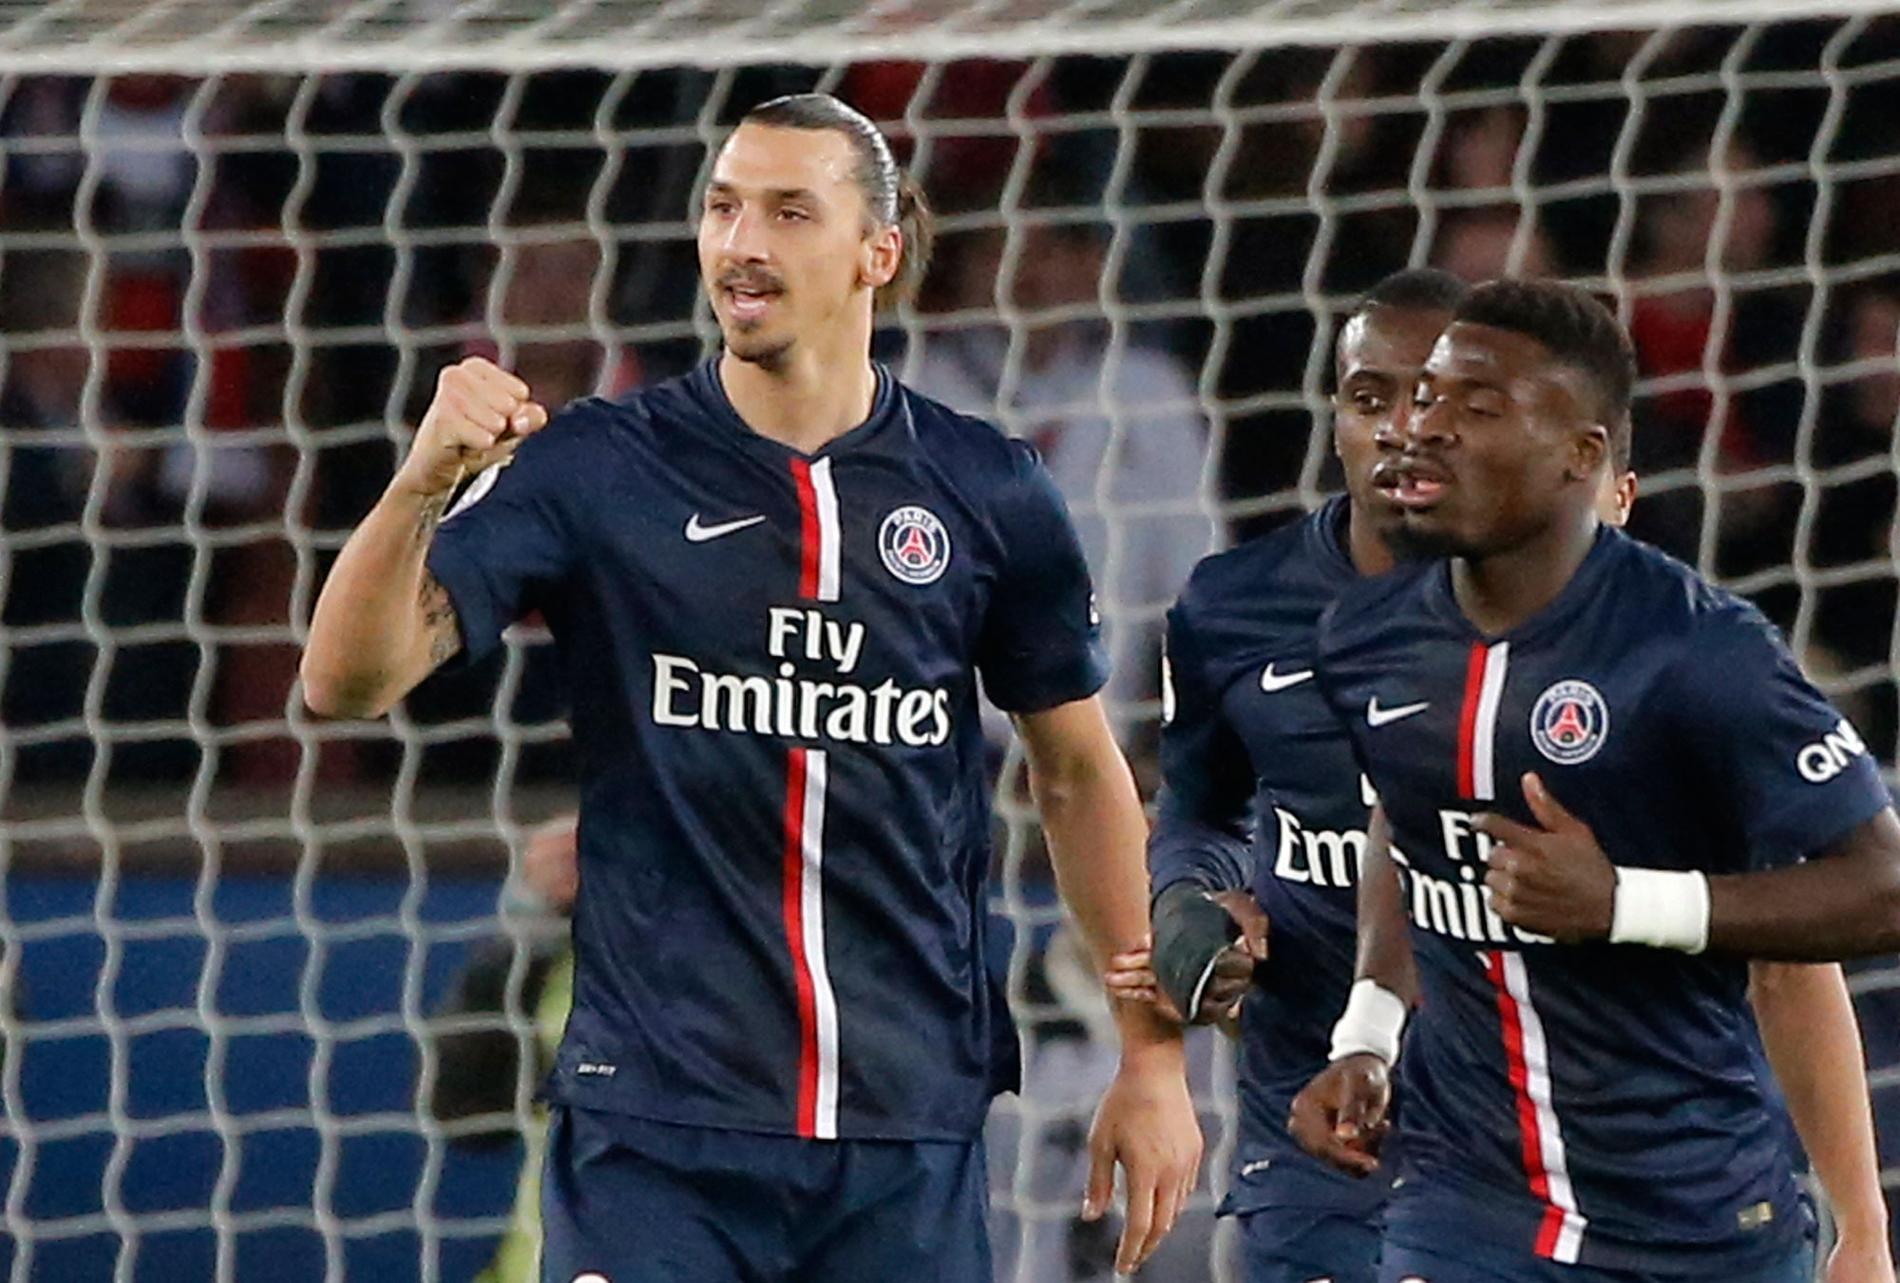 Titta Zlatan, oddsen pekar på ny seger i franska ligan.